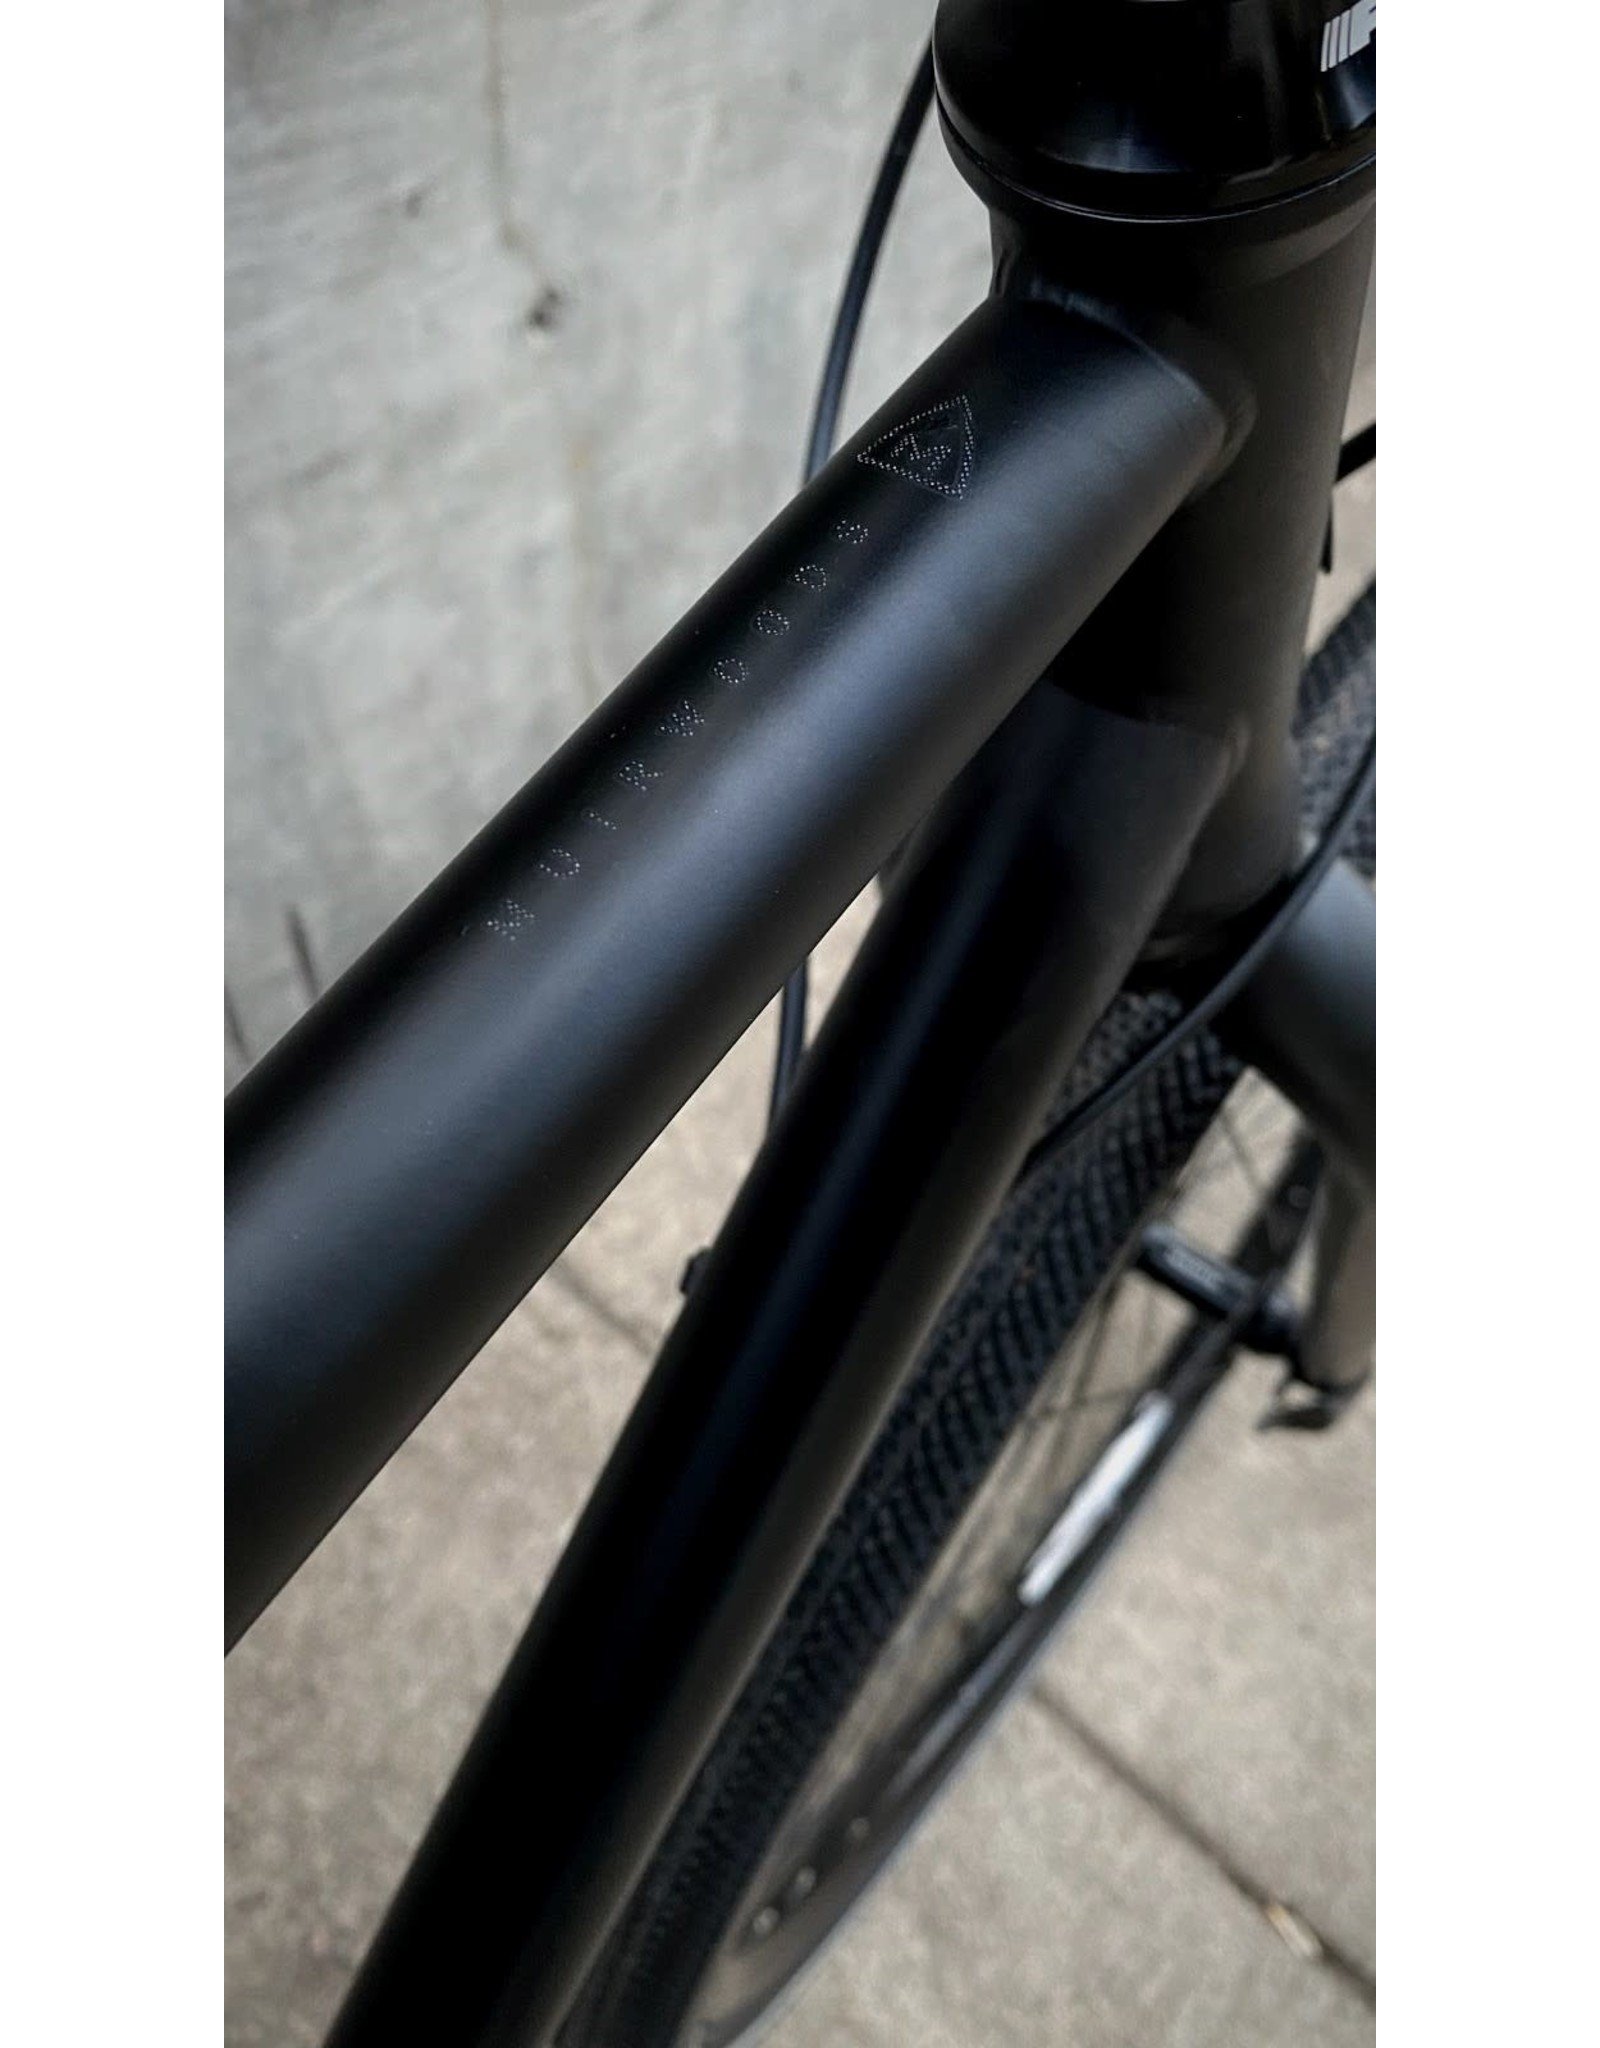 Marin Bikes 2021 Marin Muirwoods Satin Black/Gloss Reflective